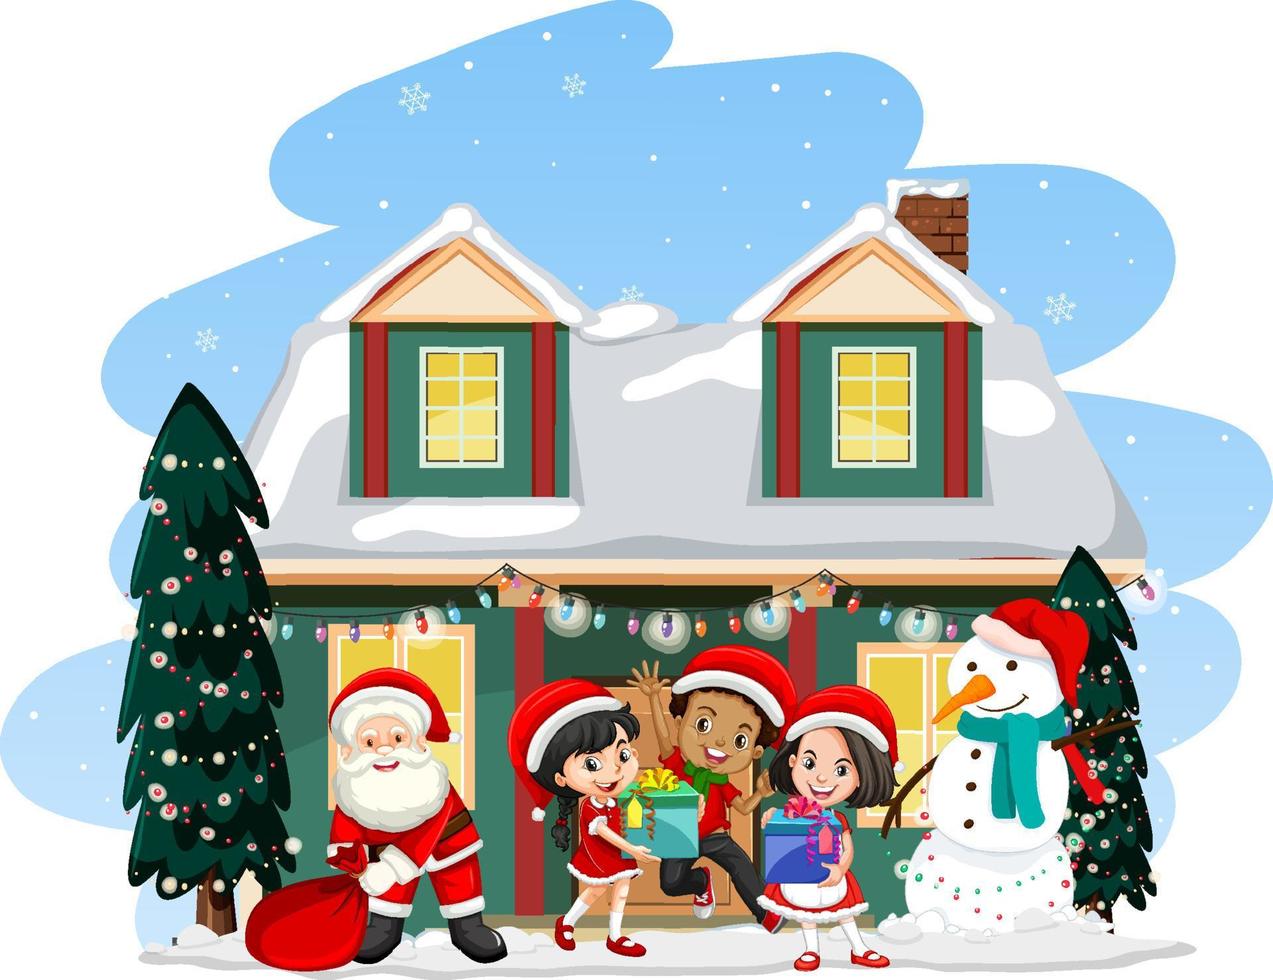 de kerstman met kinderen die voor een huis staan vector